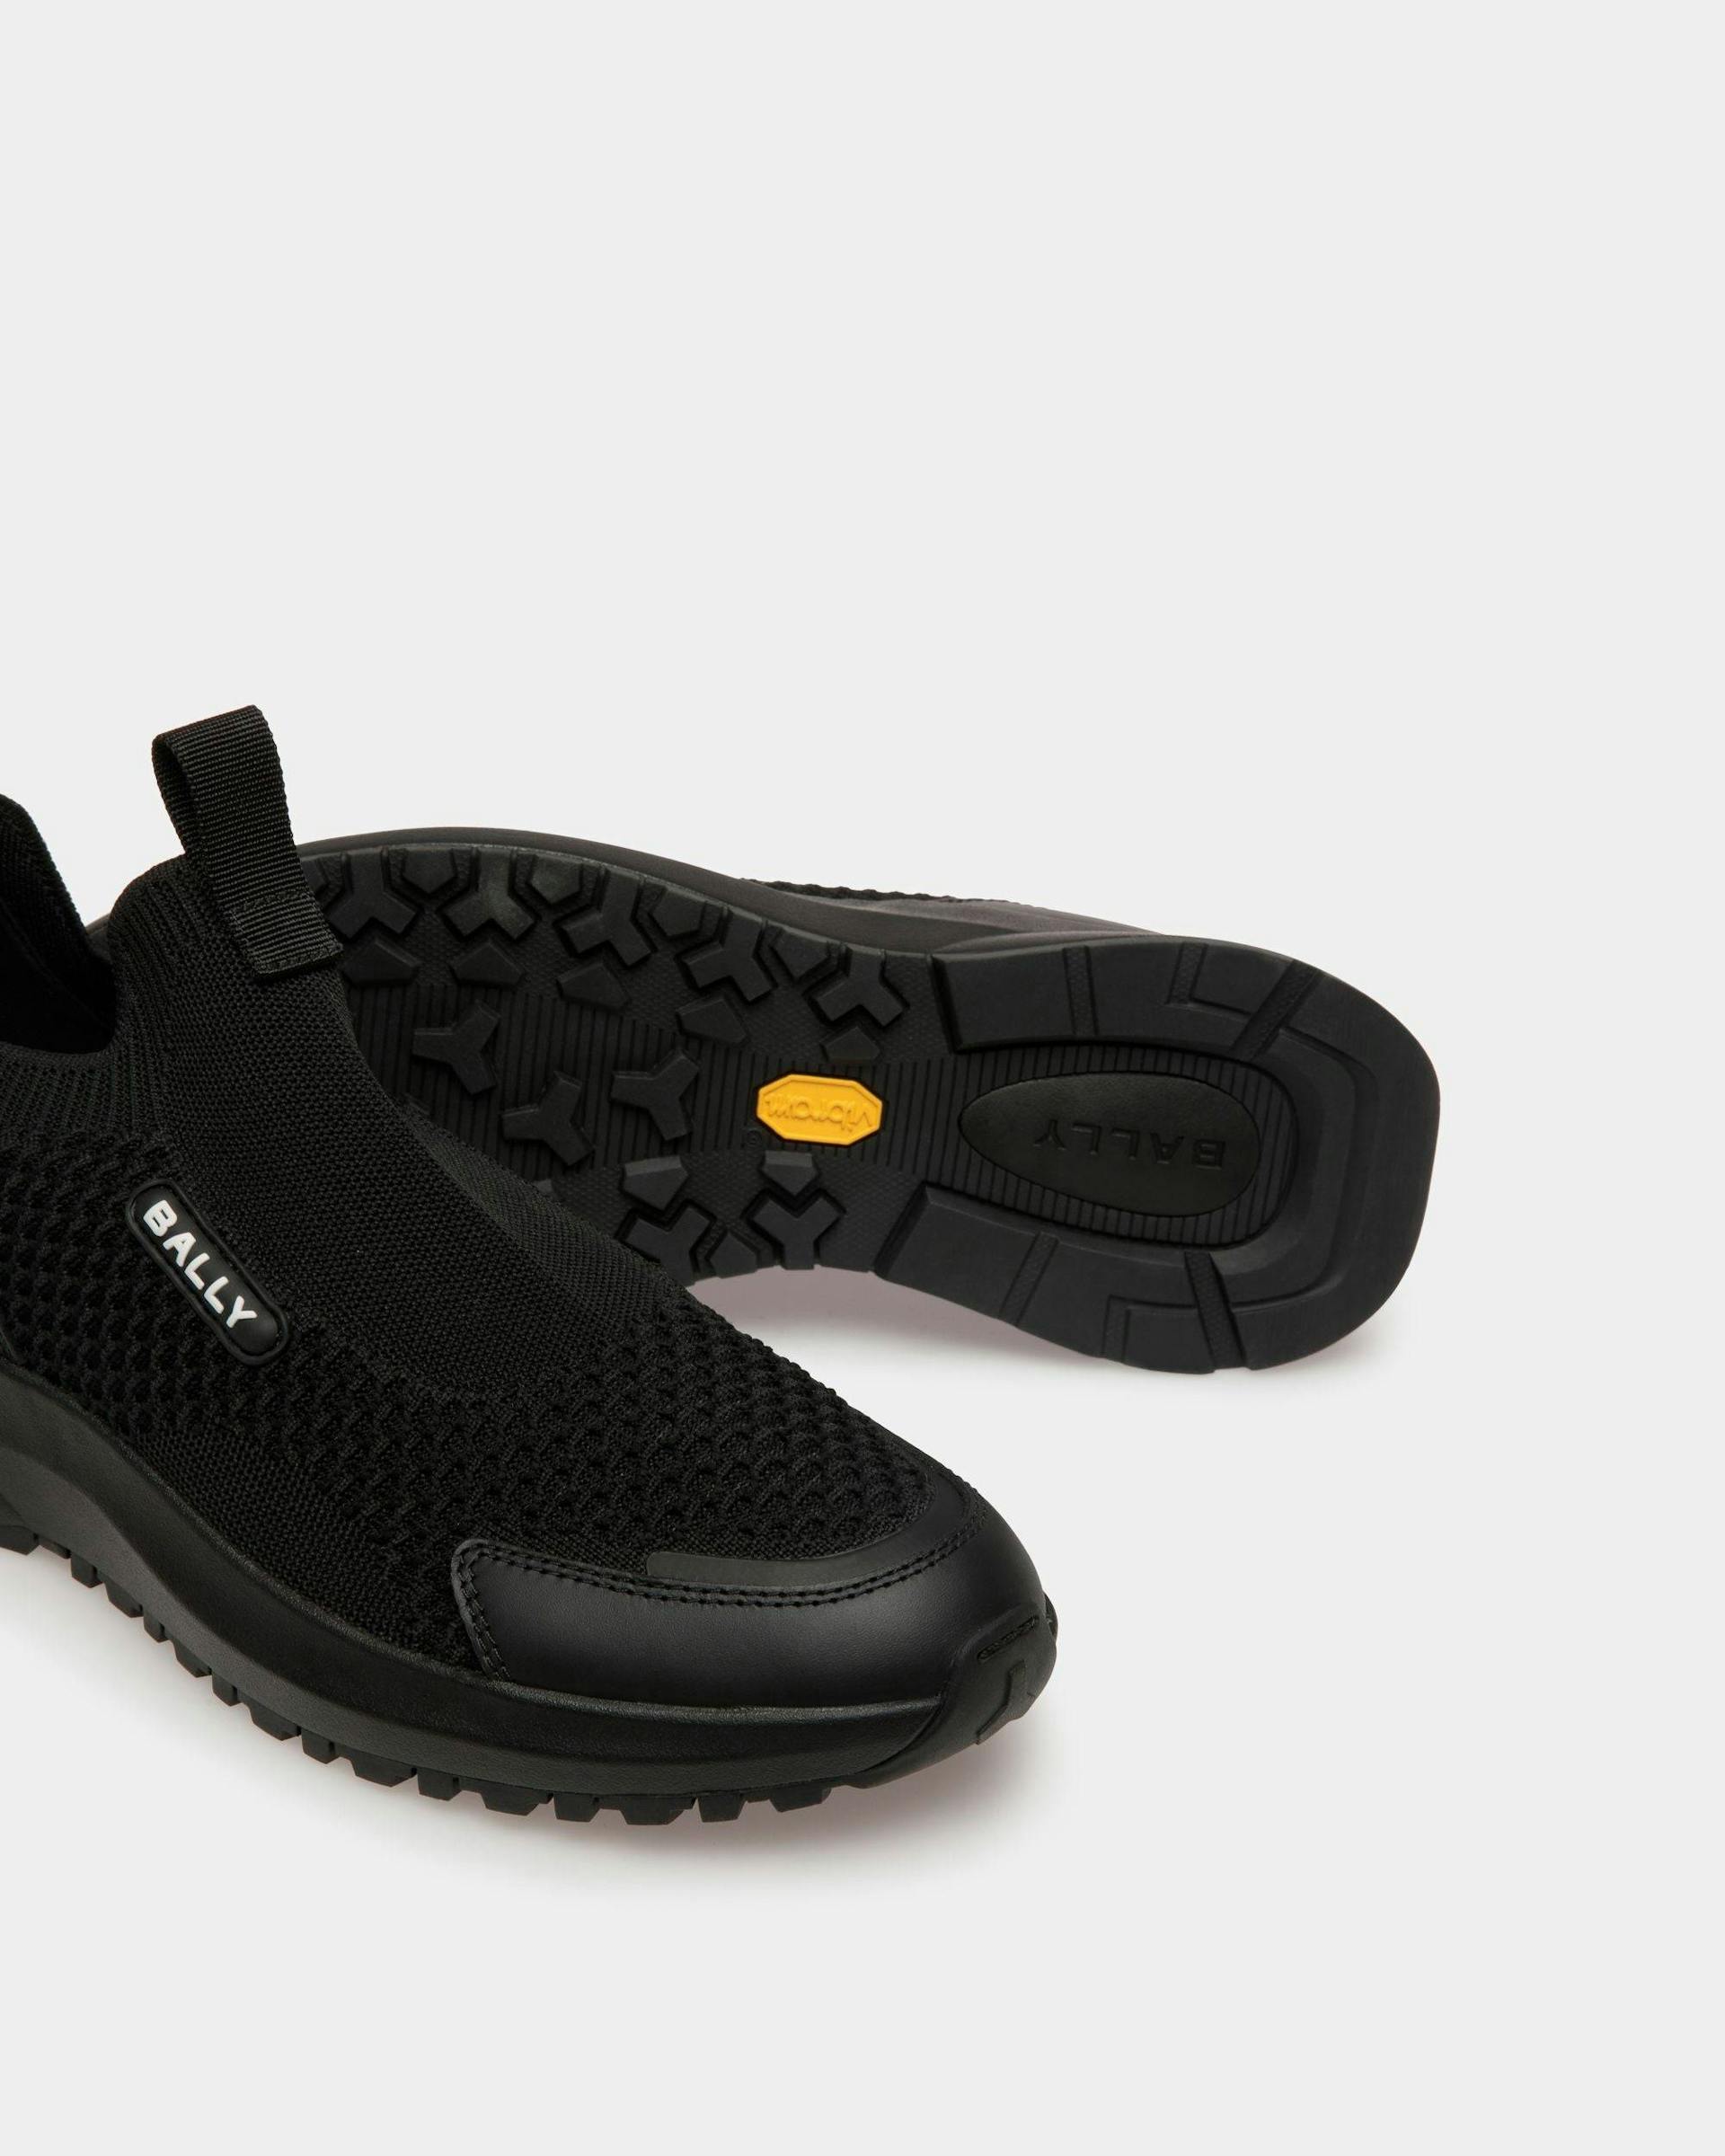 Men's Outline Sneaker in Black Nylon | Bally | Still Life Below